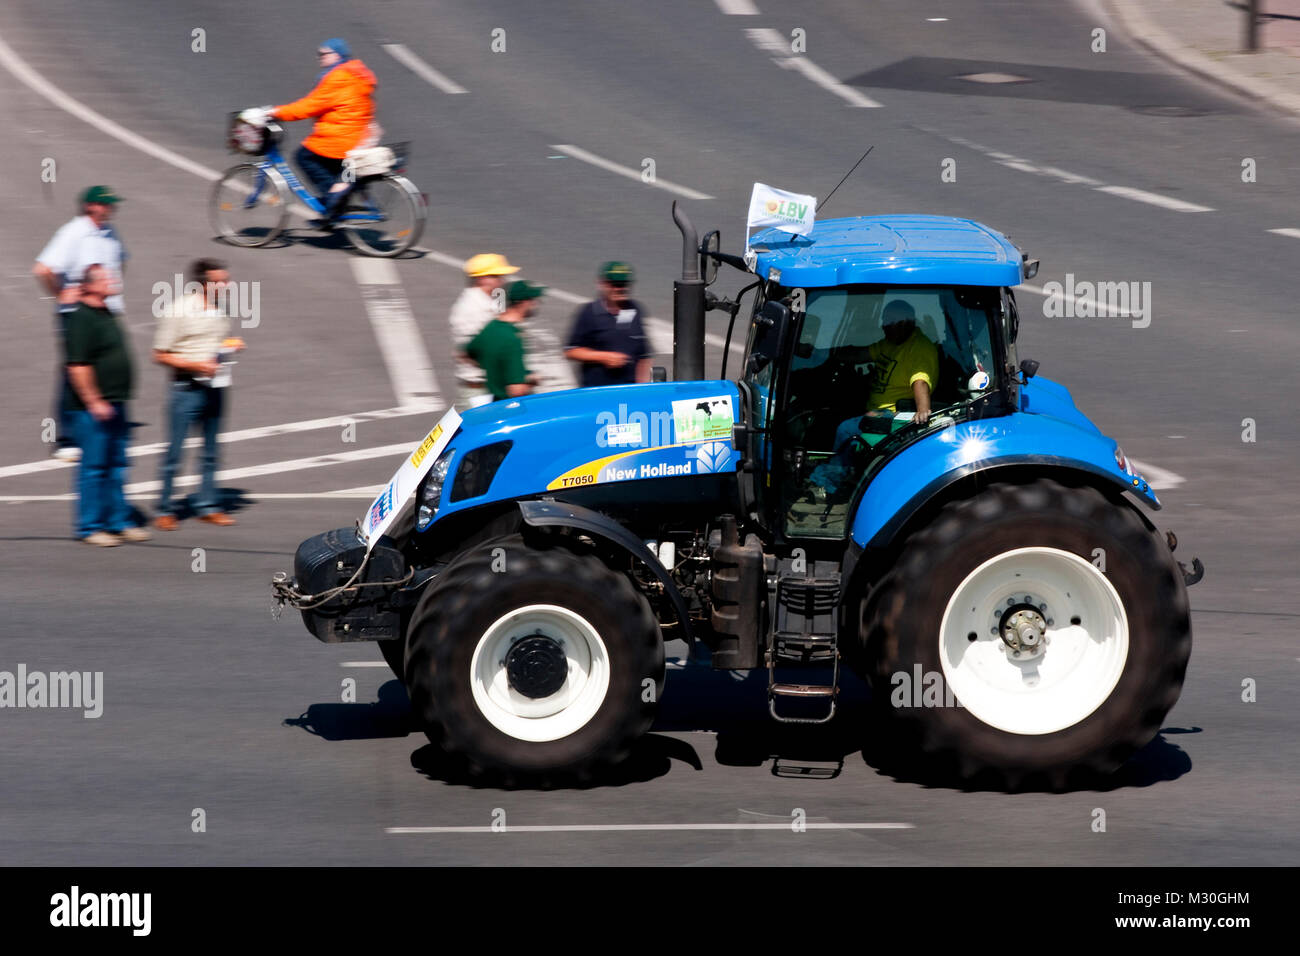 Traktor-Demo der Bauern löst Verkehrschaos aus Stock Photo